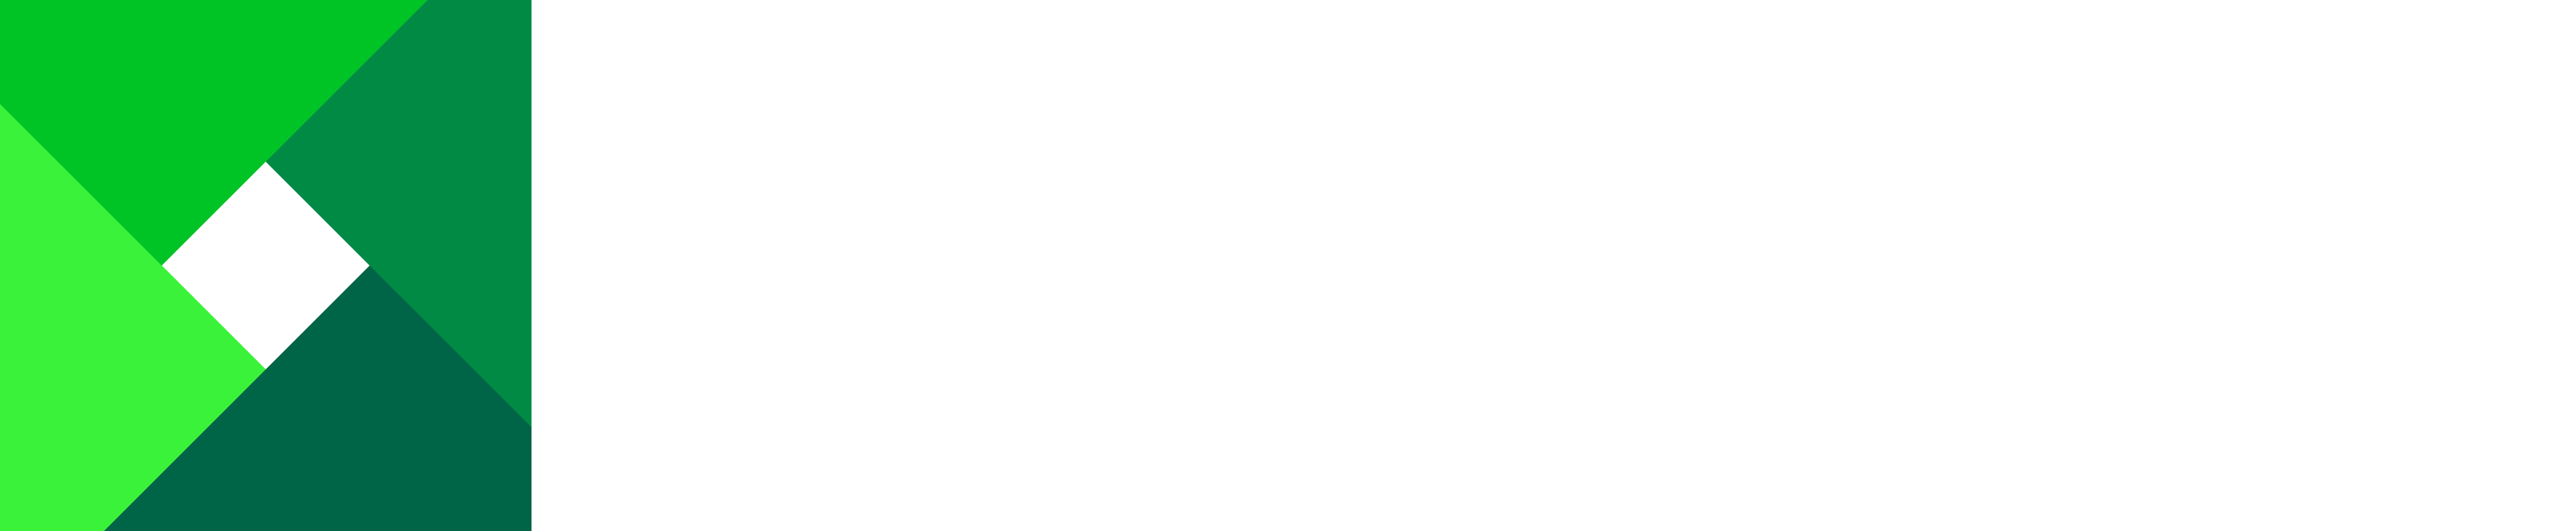 Lexmark Logo - Lexmark CSR